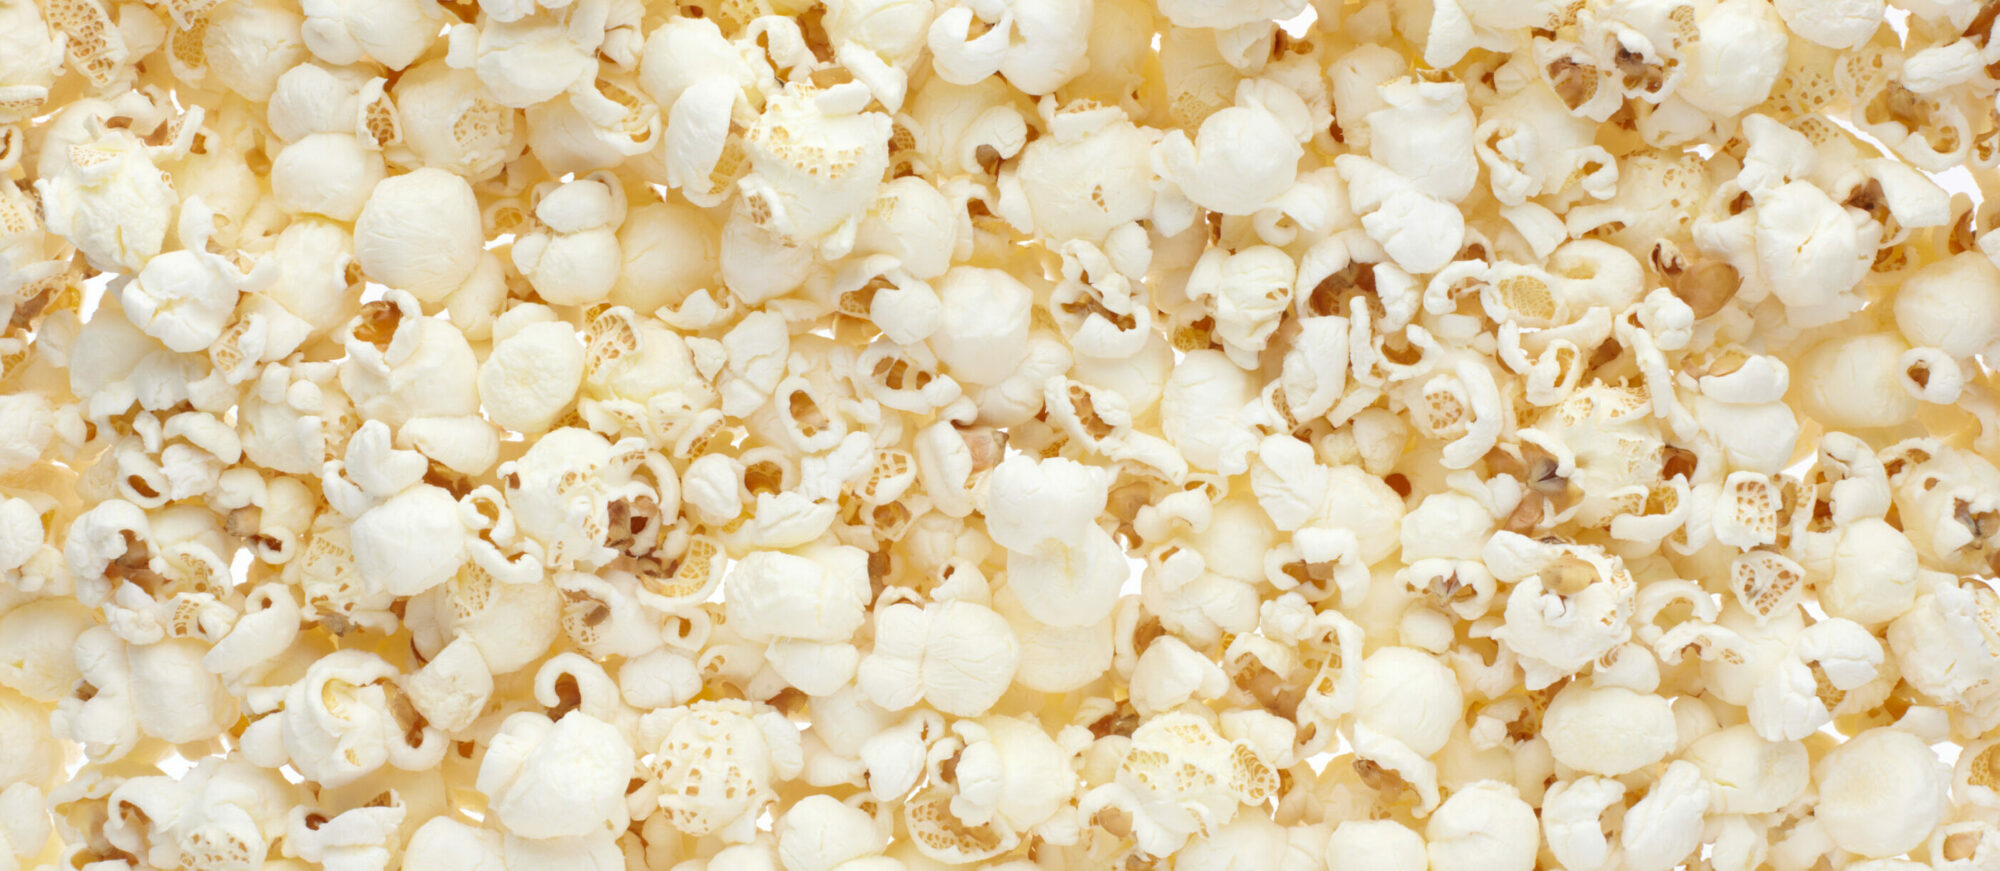 Zu viel Pestizid im zurückgerufen Produkte Lidl bei Popcorn: Mehrere